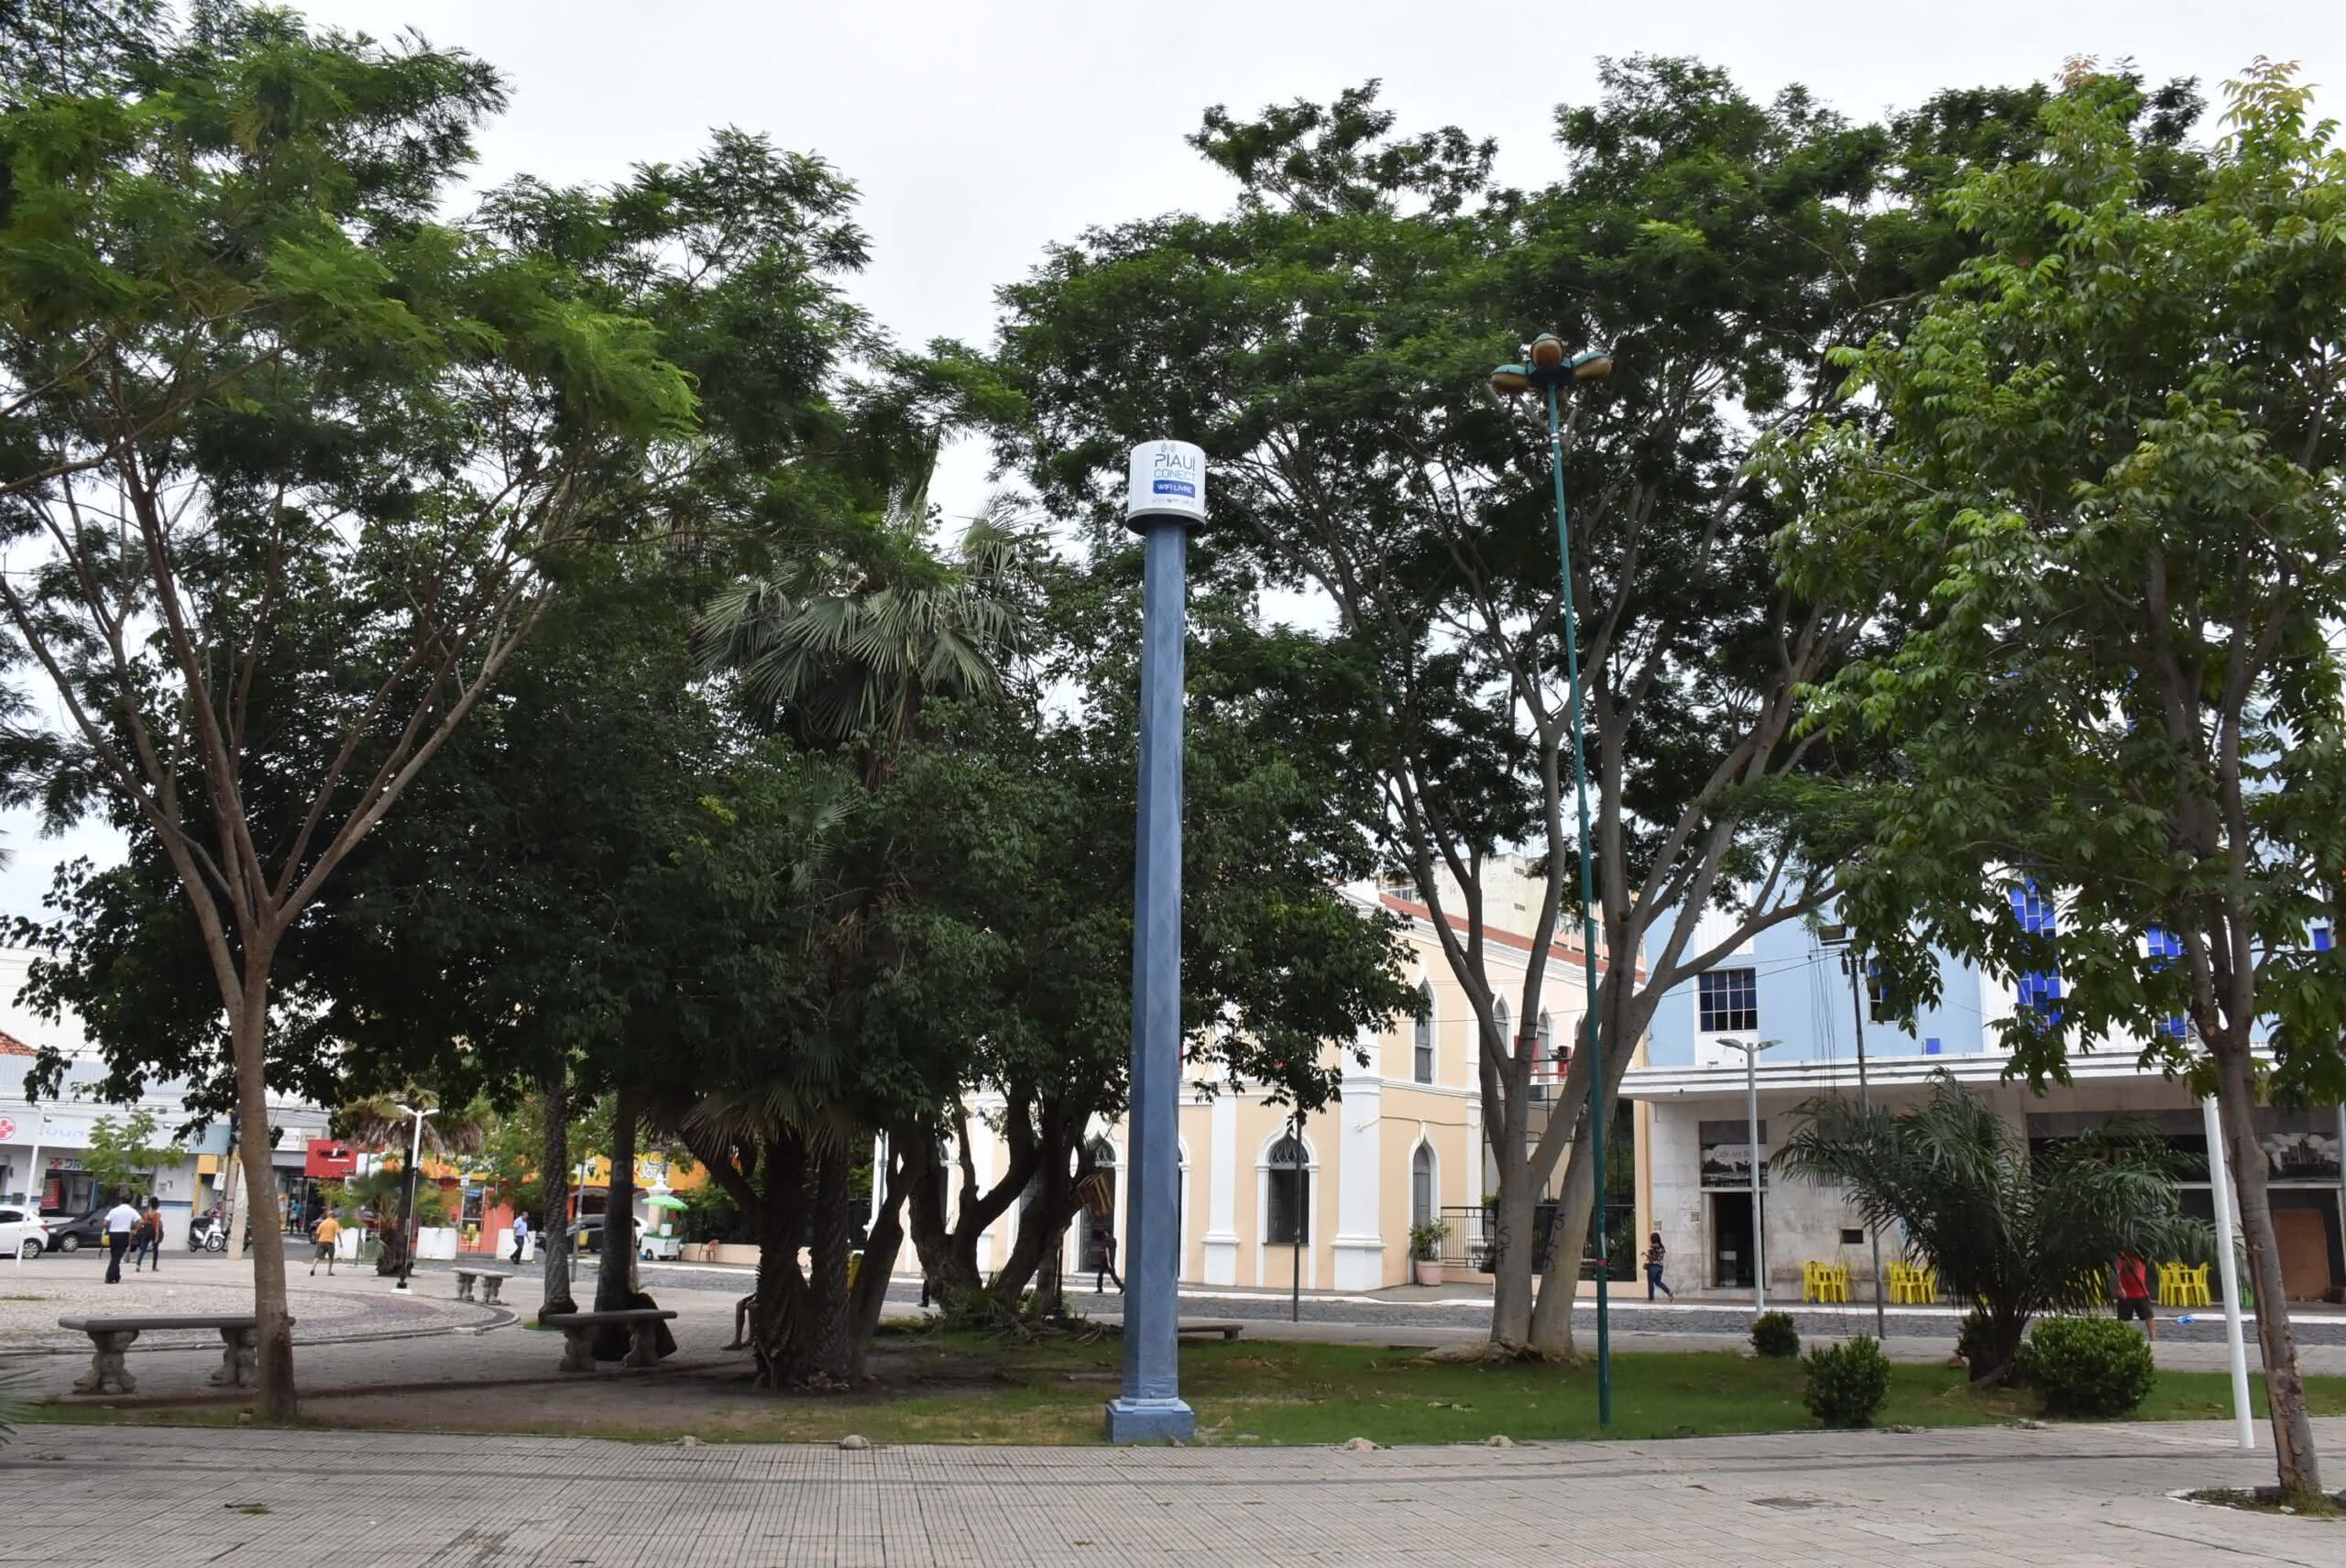 Conheça o projeto que quer levar internet gratuita às praças de Piauí (Foto: Reprodução/Governo do Estado do Piauí)